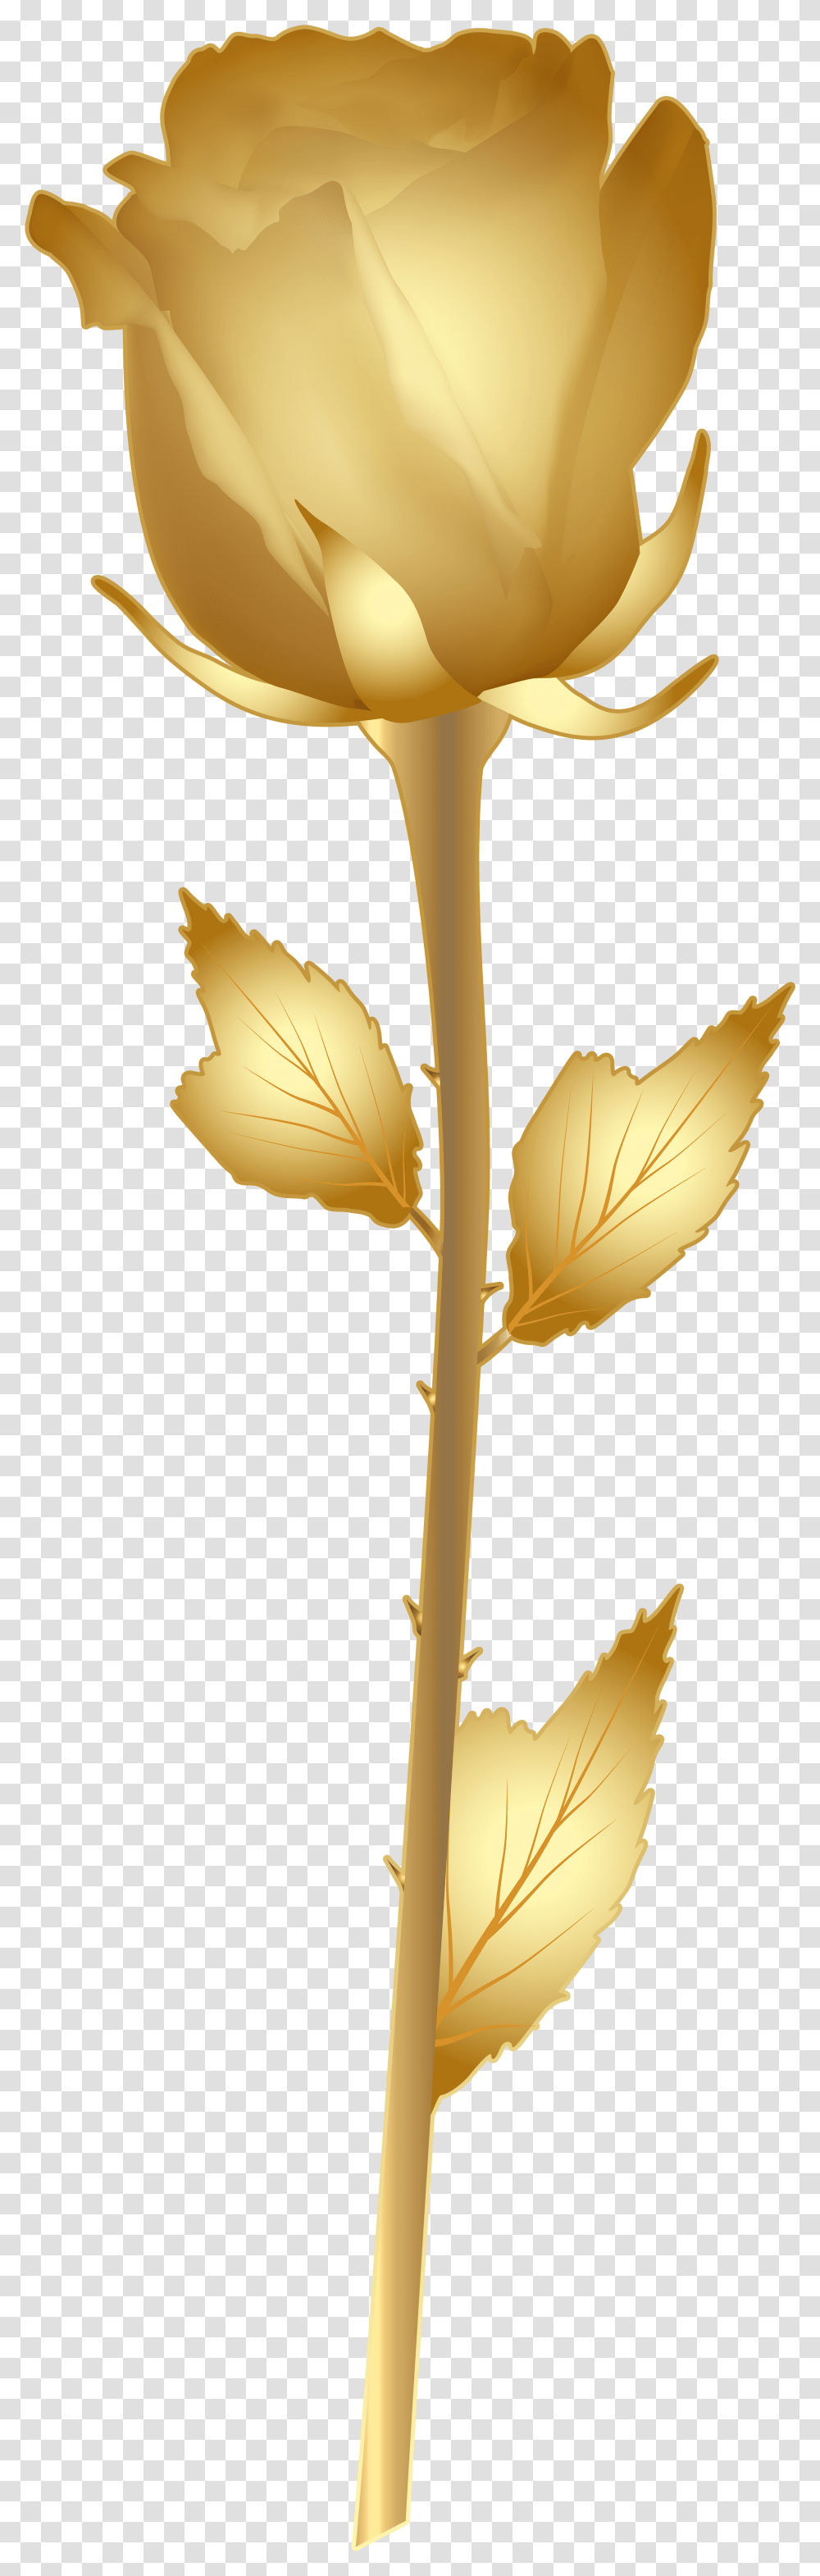 Swirls Clipart Rose Gold Gold Rose Clipart, Leaf, Plant, Maple Leaf, Light Transparent Png